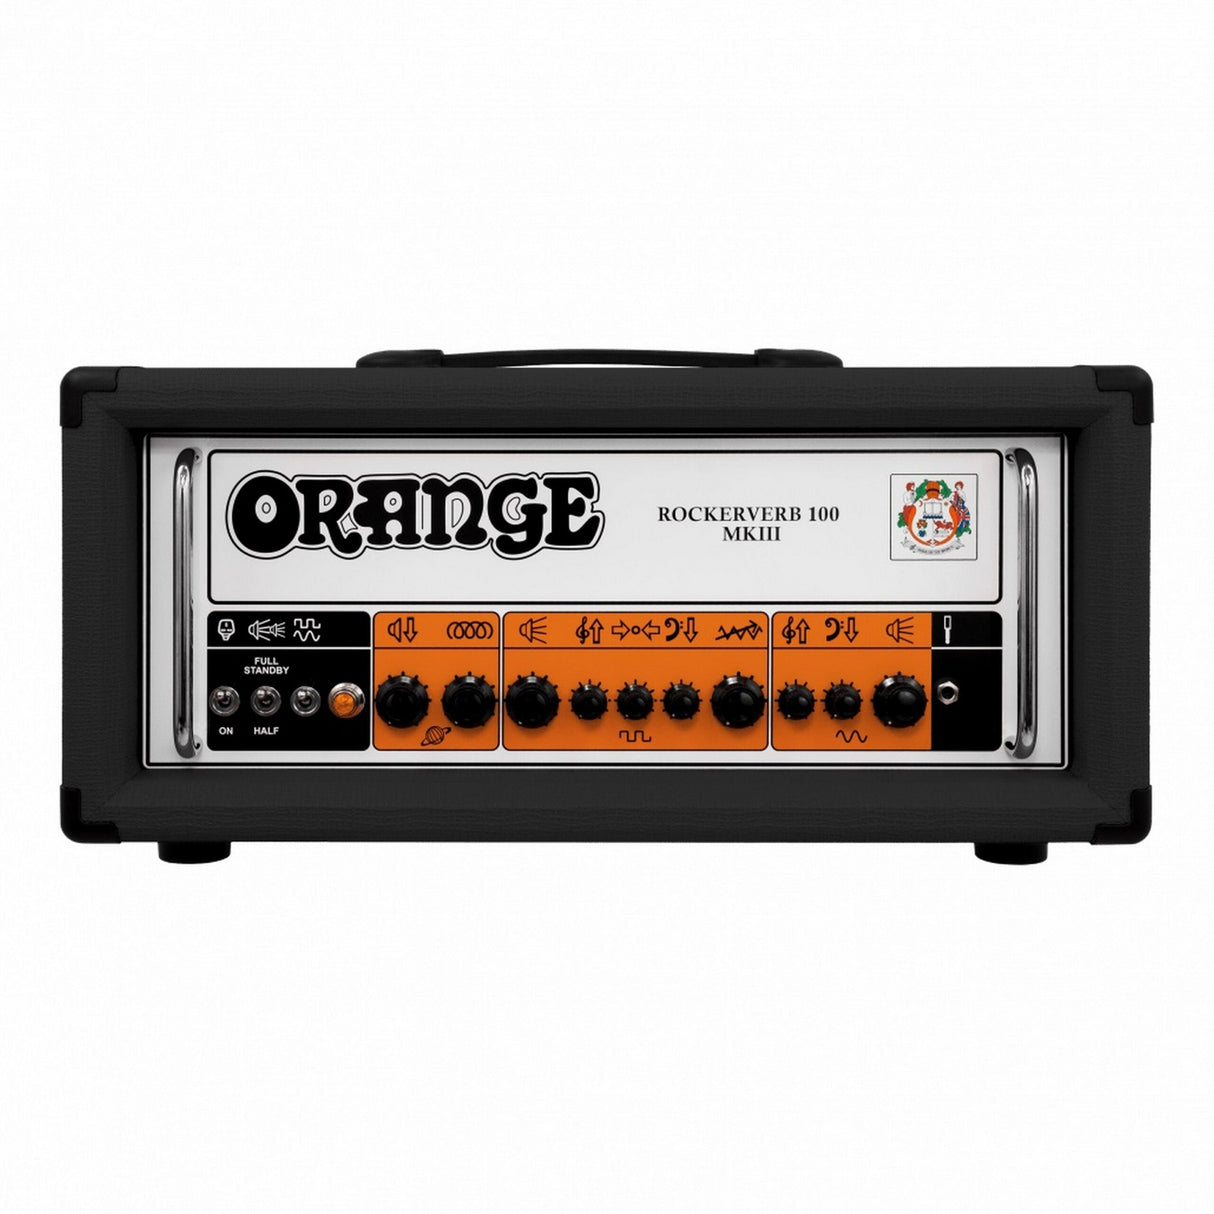 Orange Rockerverb MKIII 100 Watt 2-Channel Tube Head Guitar Amplifier, Black